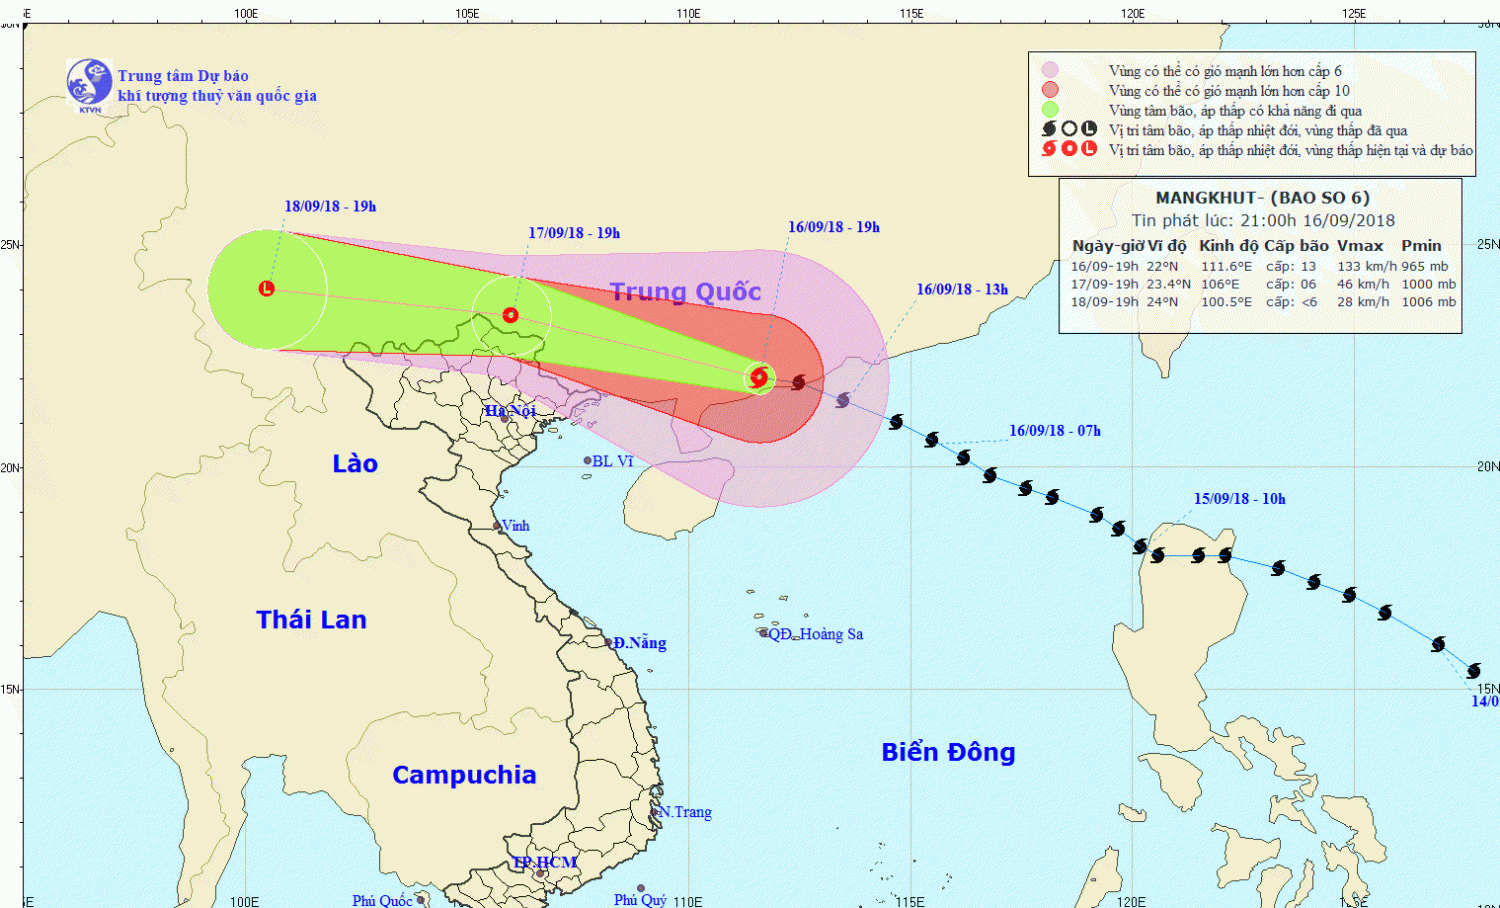 Tin bão trên đất liền Trung Quốc - cơn bão số 6 (21h00 ngày 16/9)